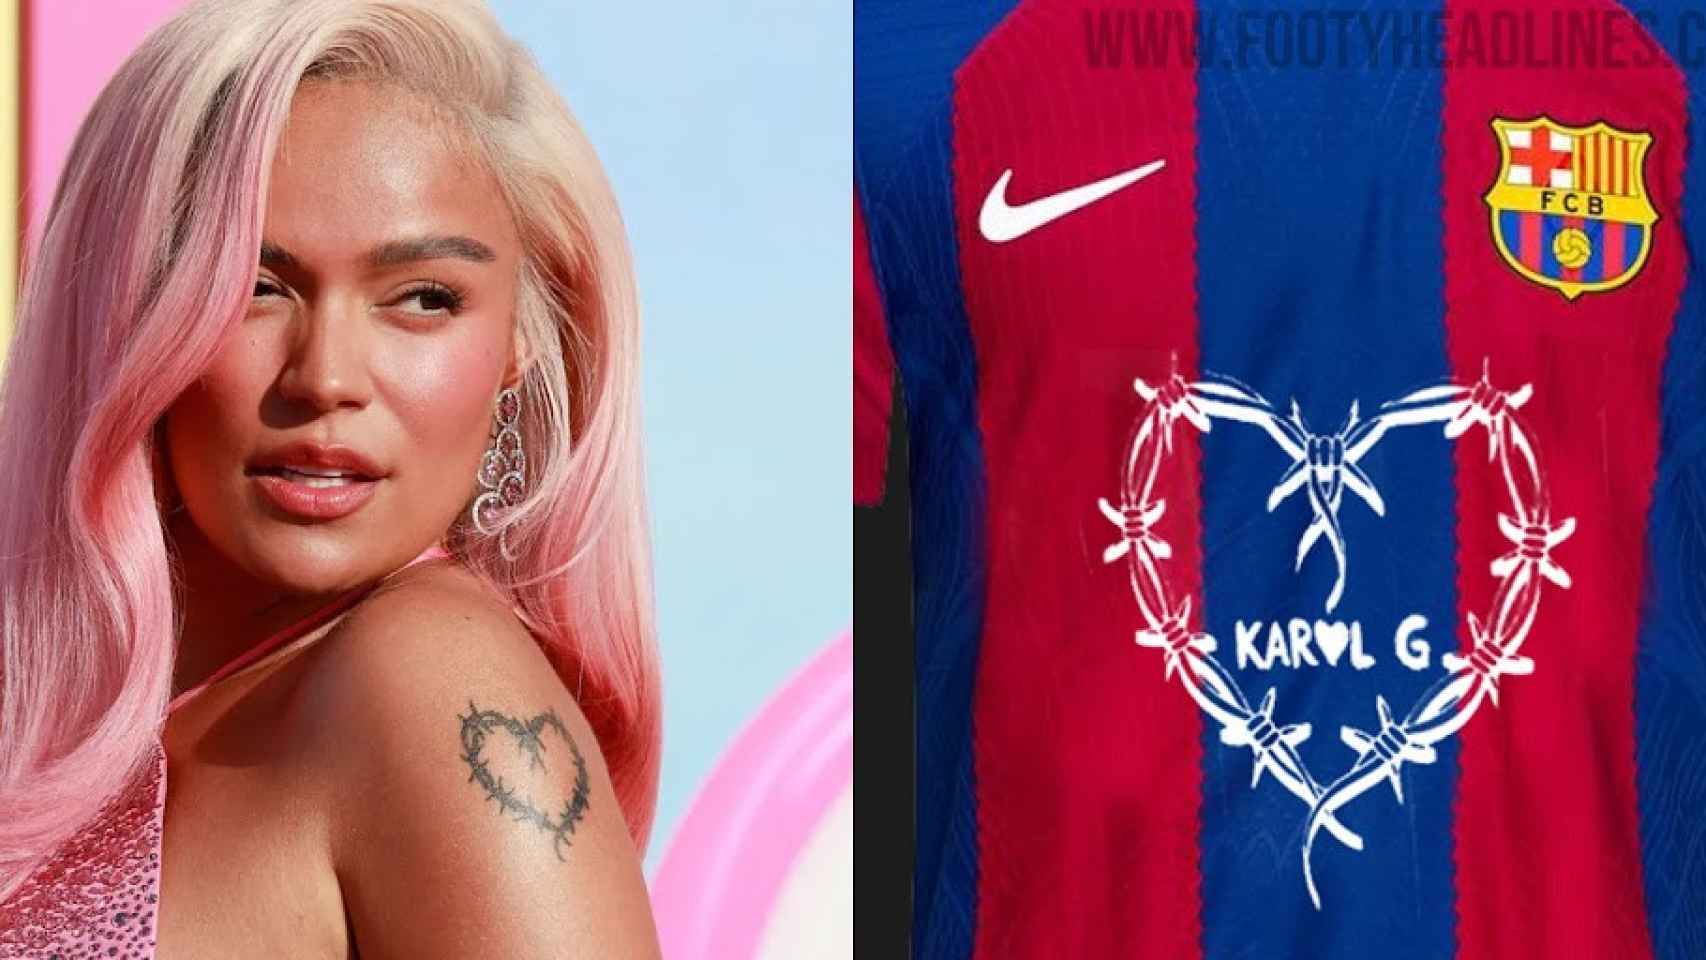 El modelo de la camiseta del Barça con el logo de Karol G